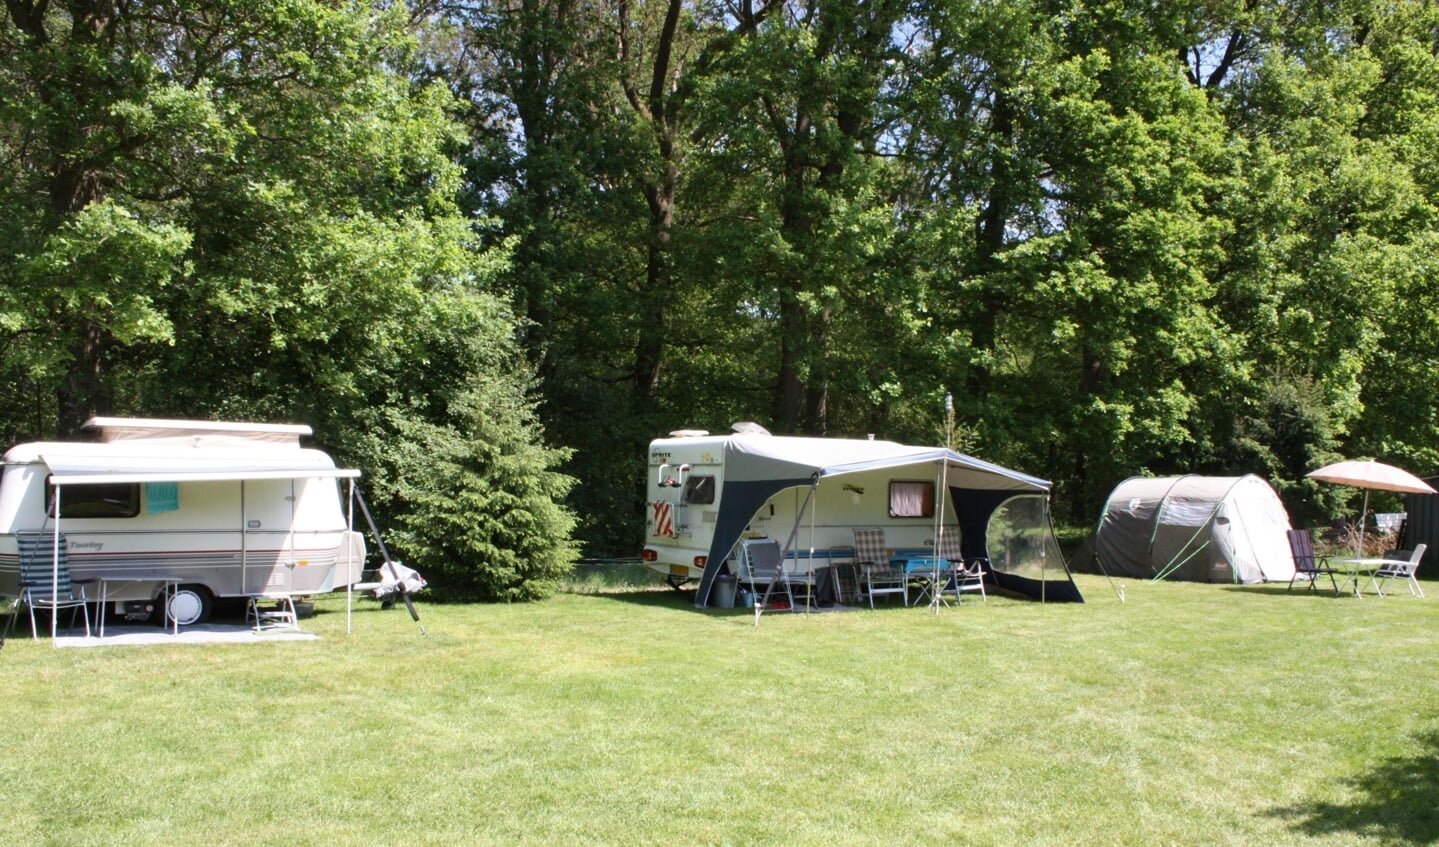 De camping bevindt zich in een bosrijke omgeving.